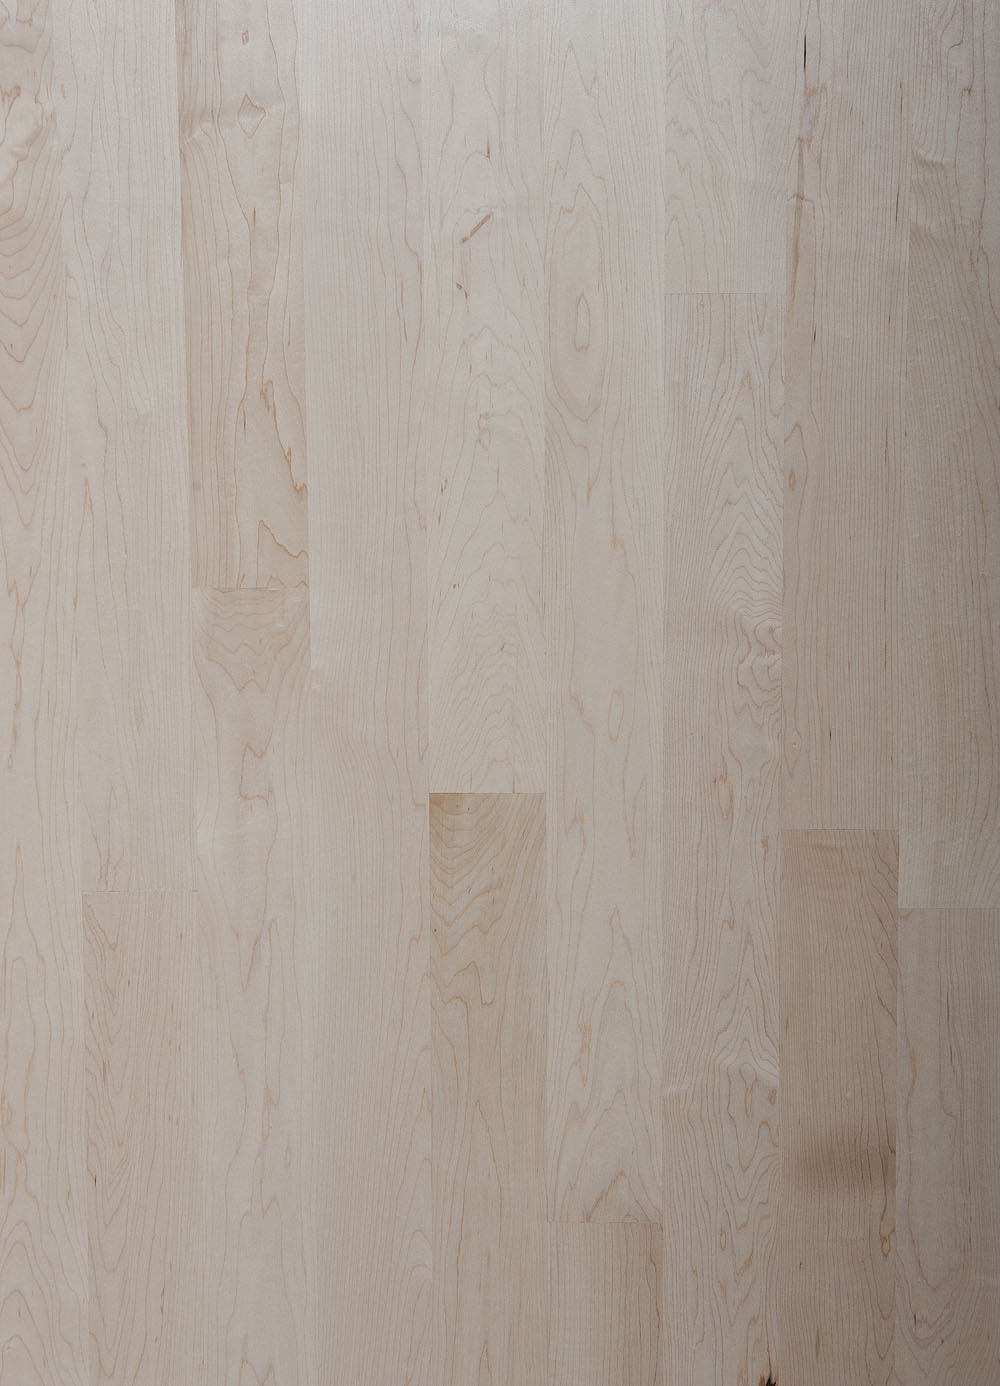 Unfinished Maple — Boardwalk Hardwood Floors